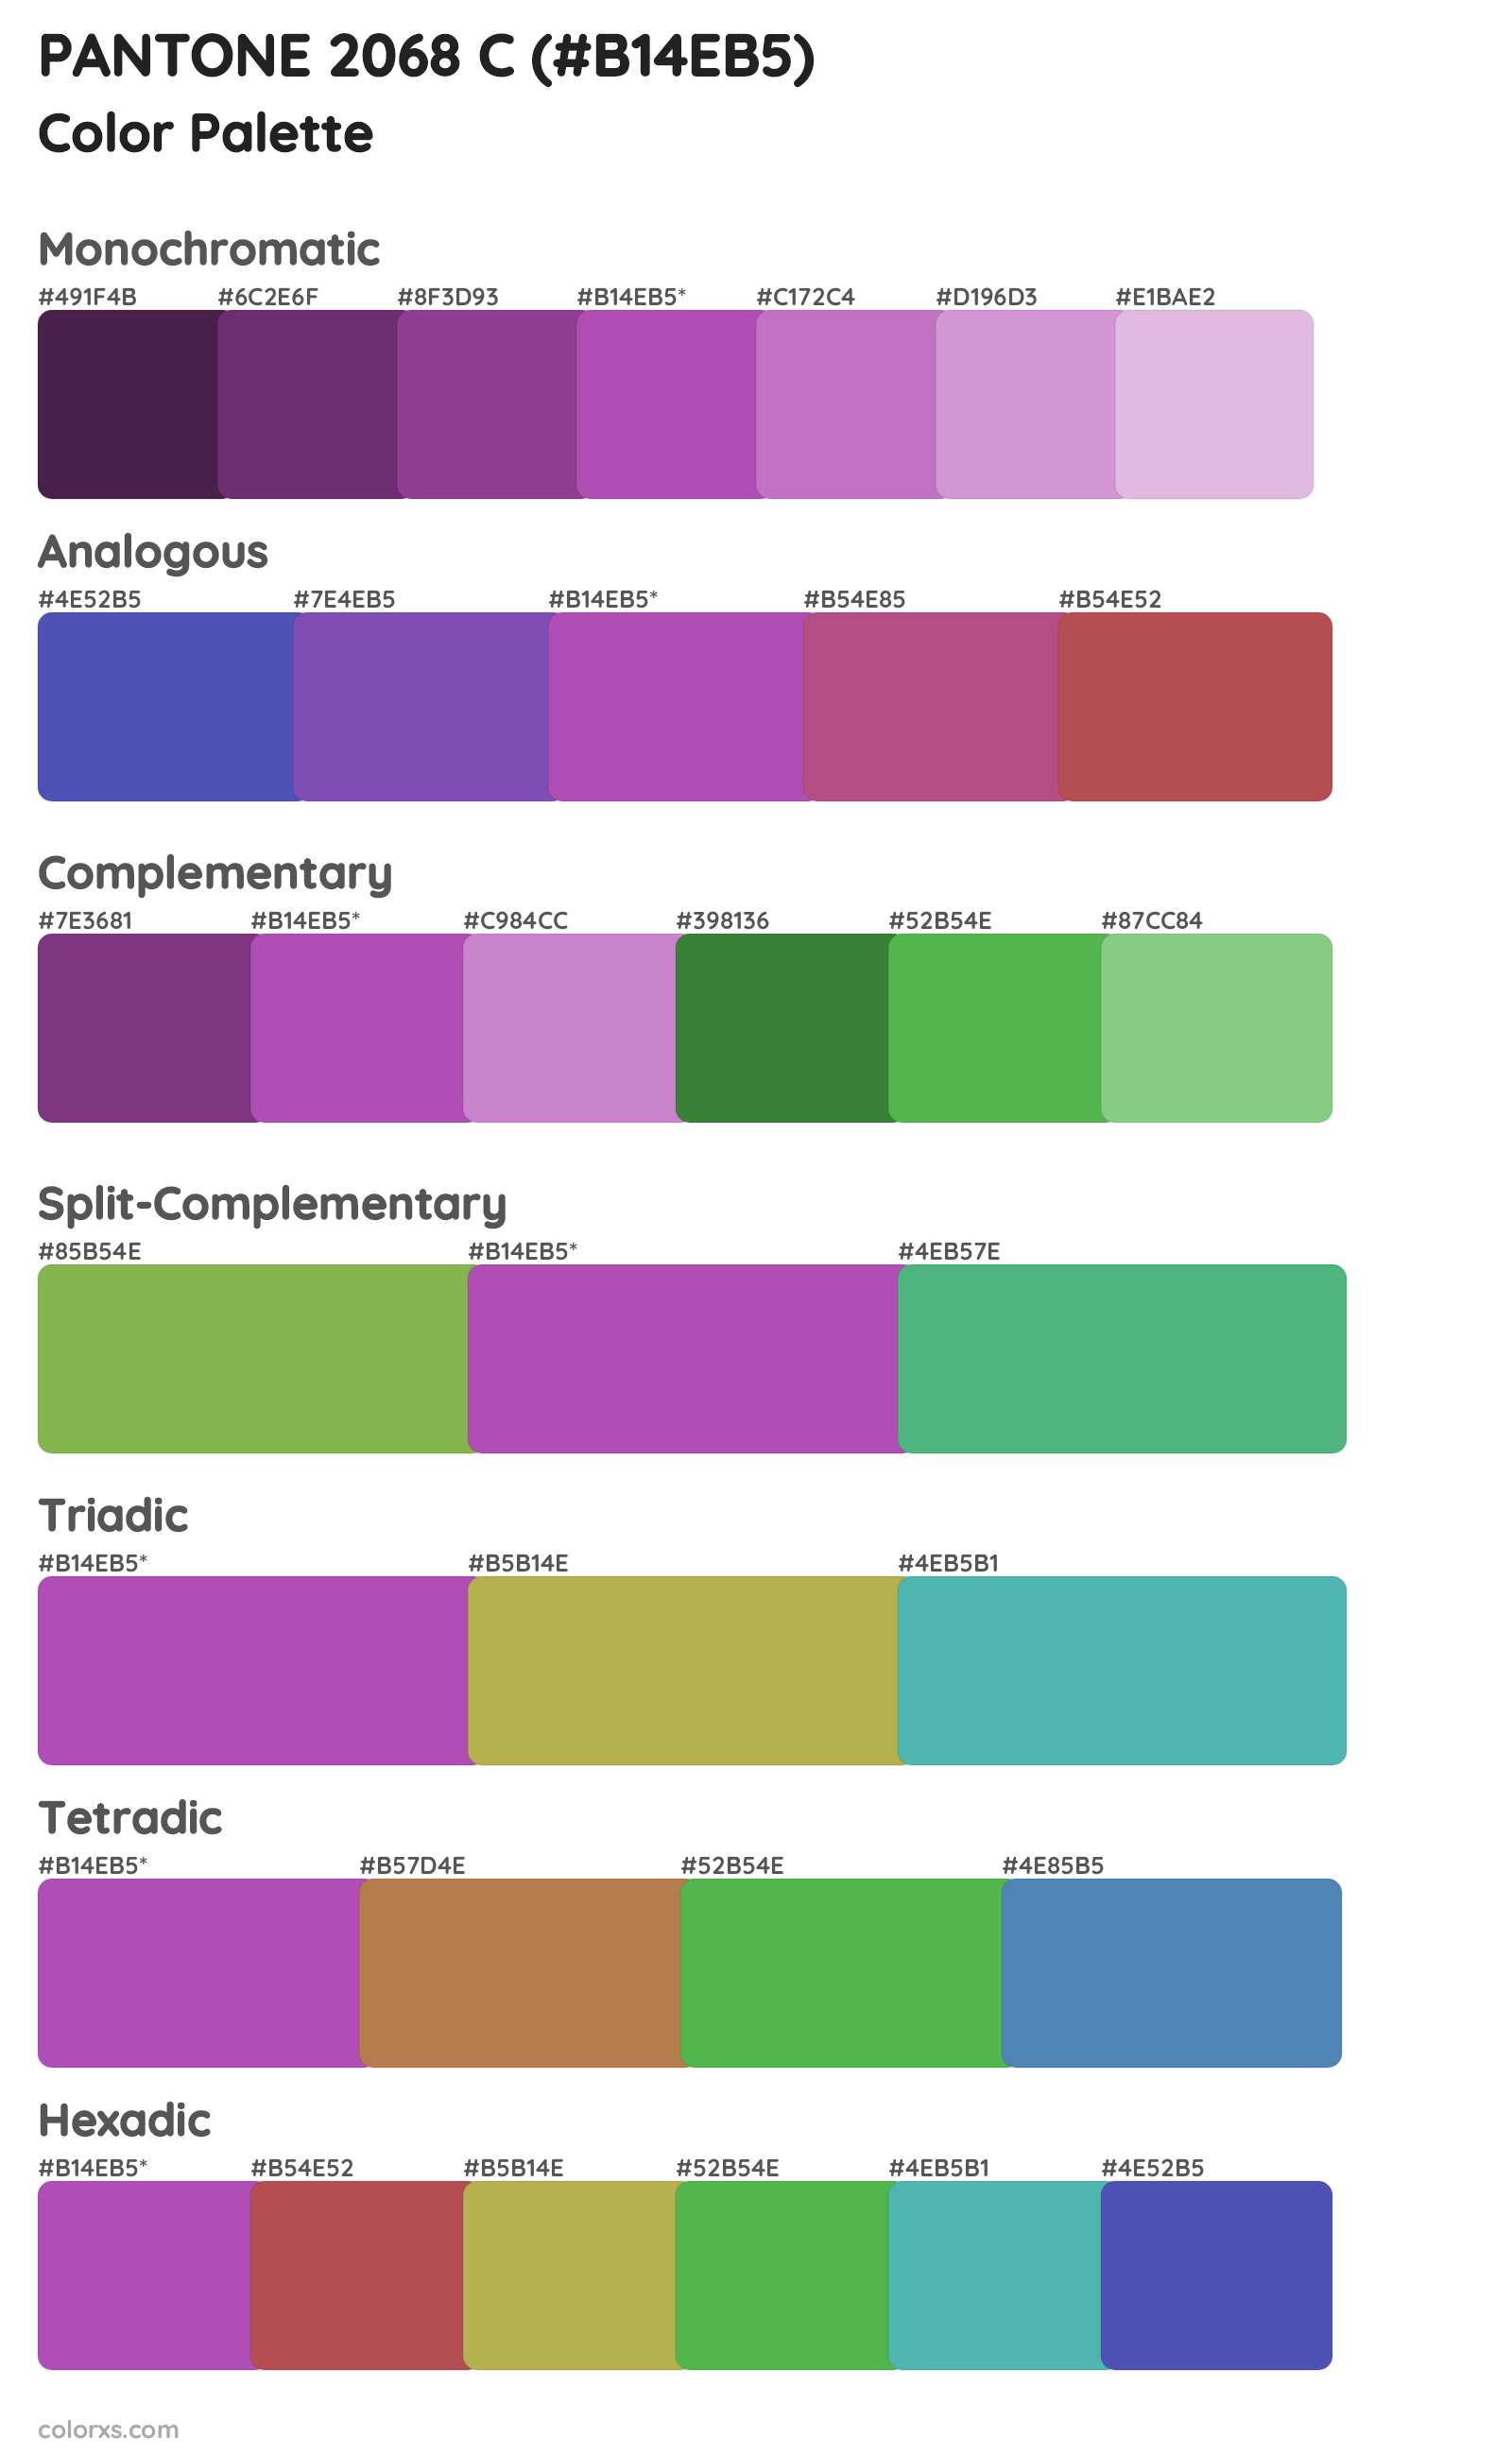 PANTONE 2068 C Color Scheme Palettes